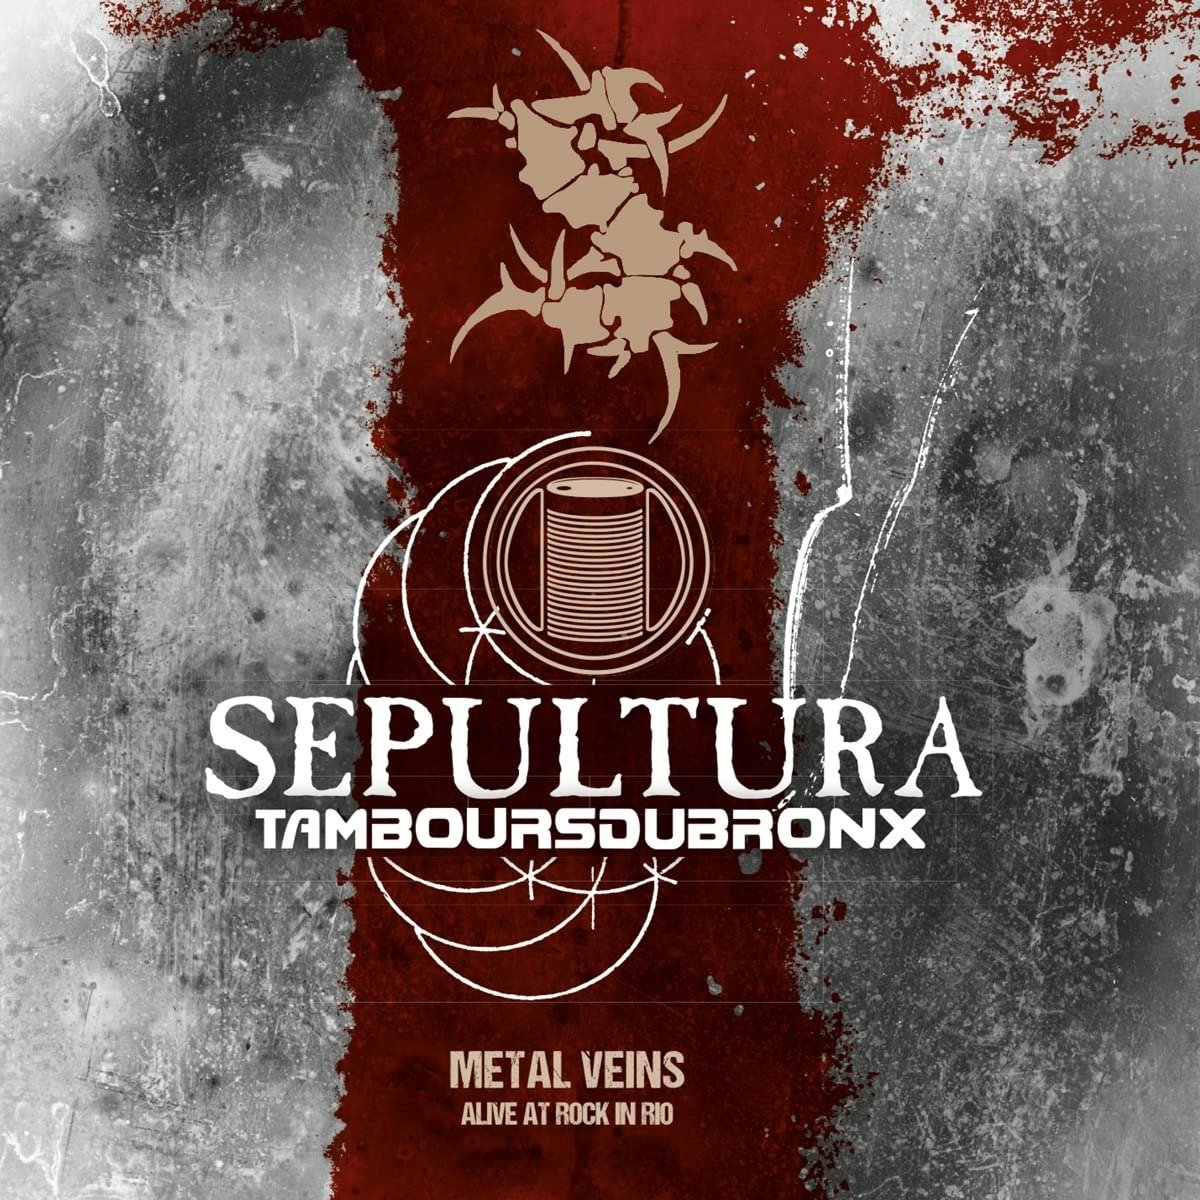 Sepultura, Metal Veins CD, CD